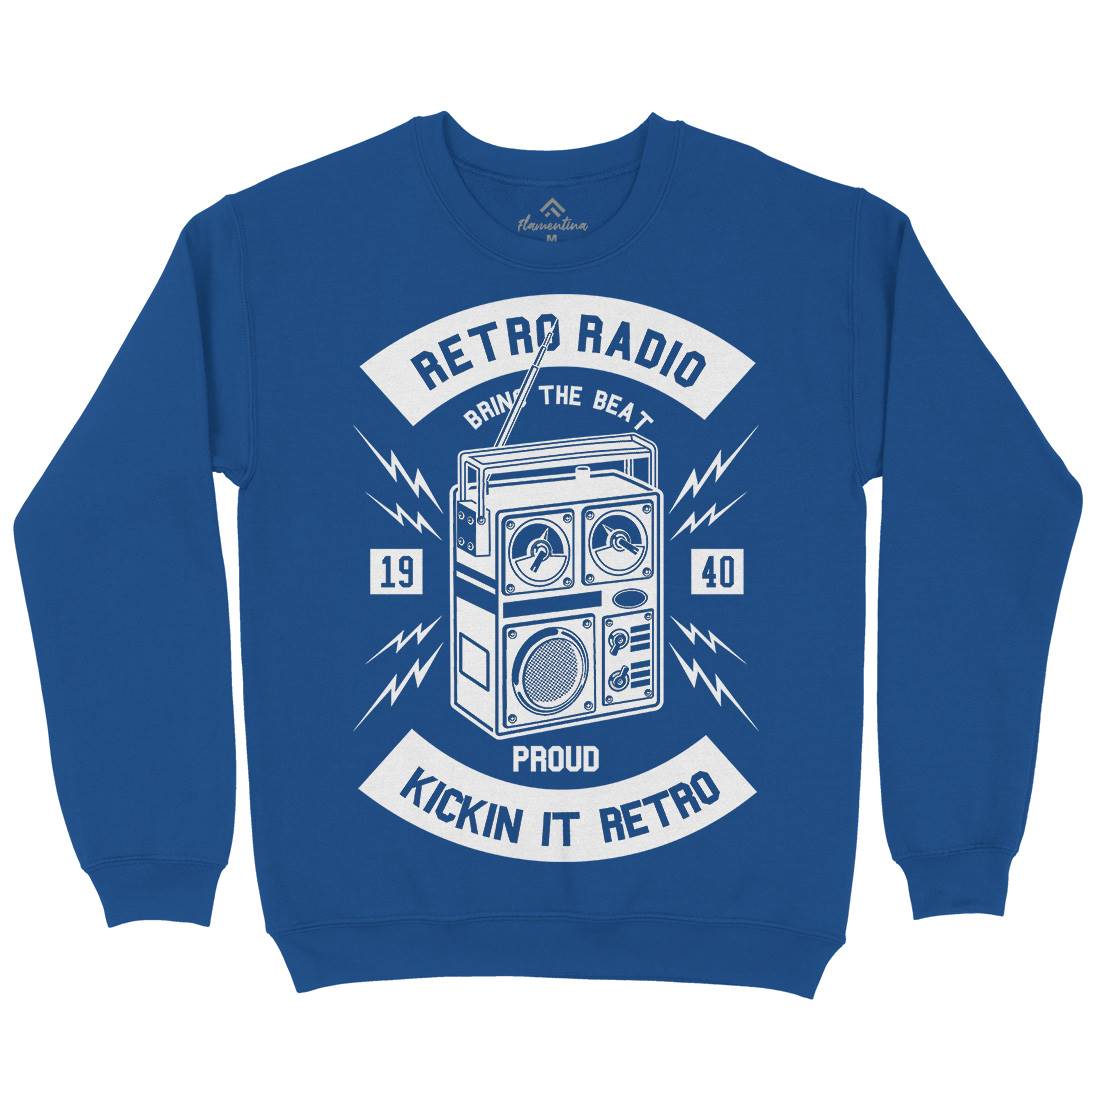 Retro Radio Kids Crew Neck Sweatshirt Music B610